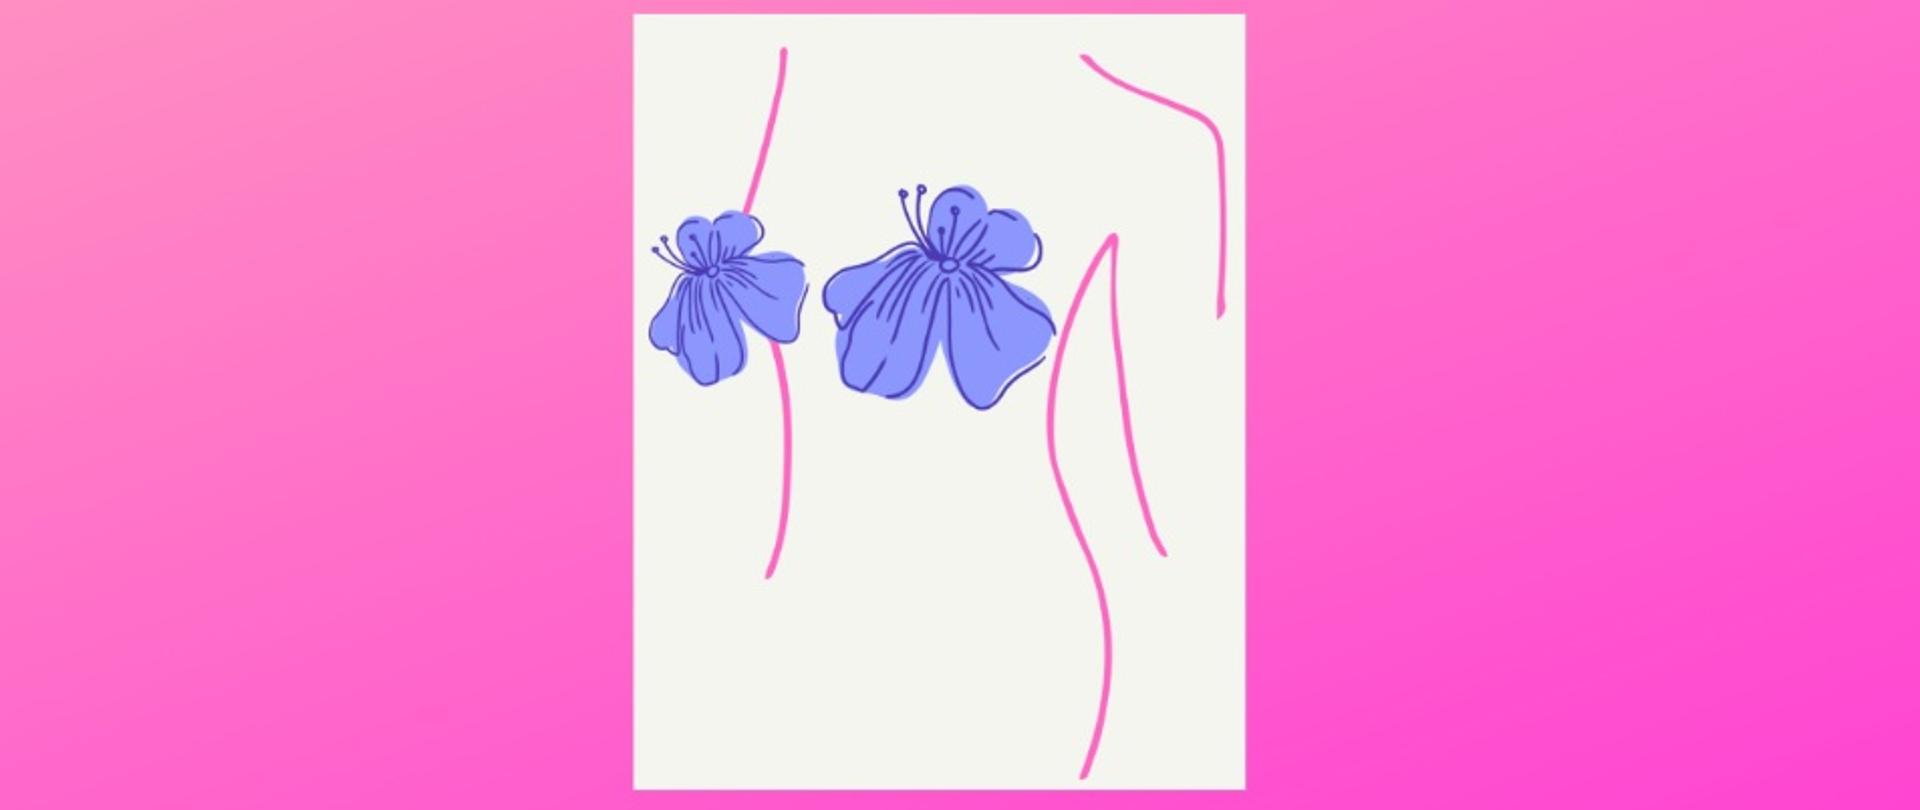 Grafika przedstawia kontury kobiety, która w miejscu piersi ma kwiaty